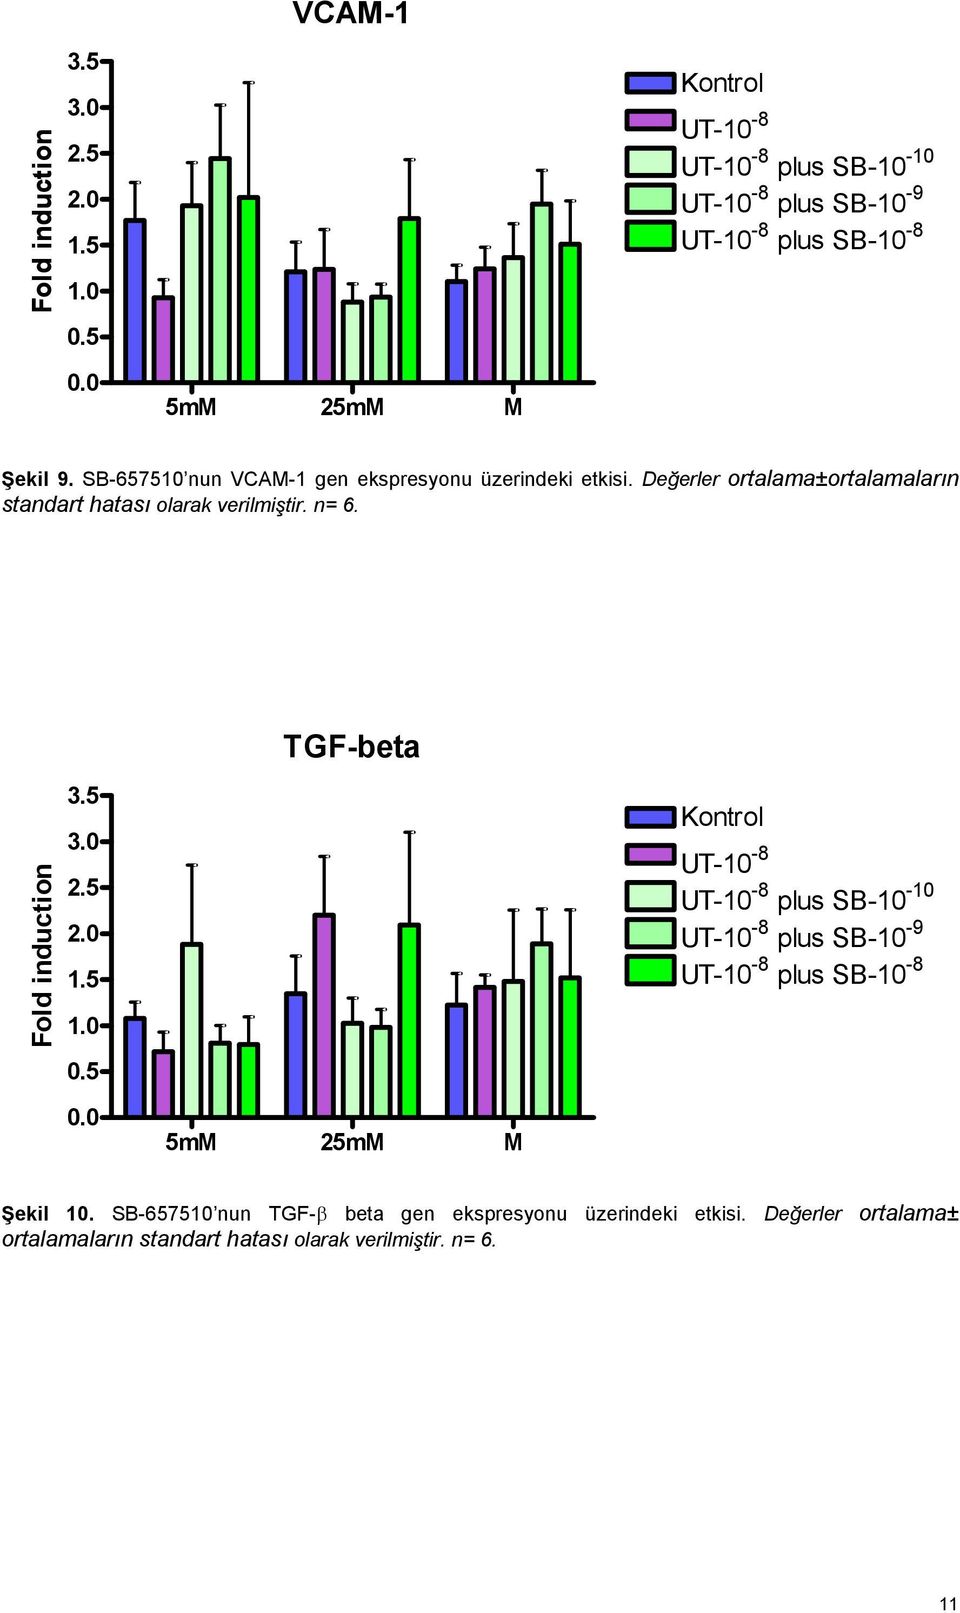 SB-657510 nun VCAM-1 gen ekspresyonu üzerindeki etkisi. Değerler ortalama±ortalamaların standart hatası olarak verilmiştir. n= 6.